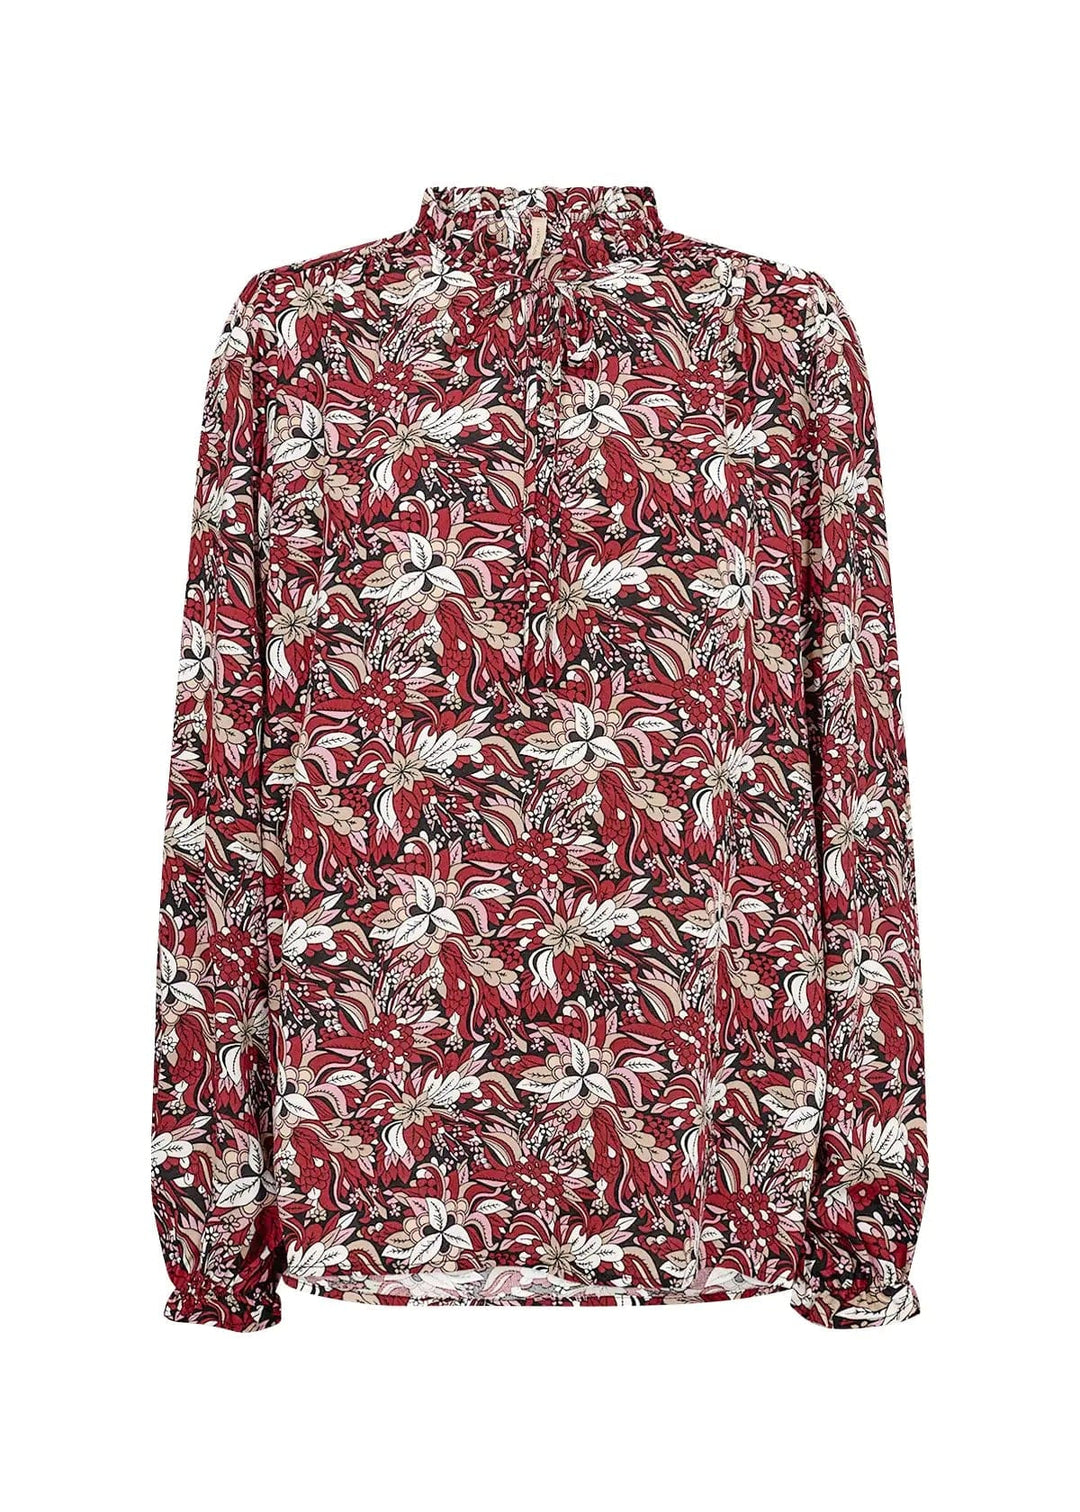 Sc-Tarita 1 Cardinal Combi | Skjorter og bluser | Smuk - Dameklær på nett